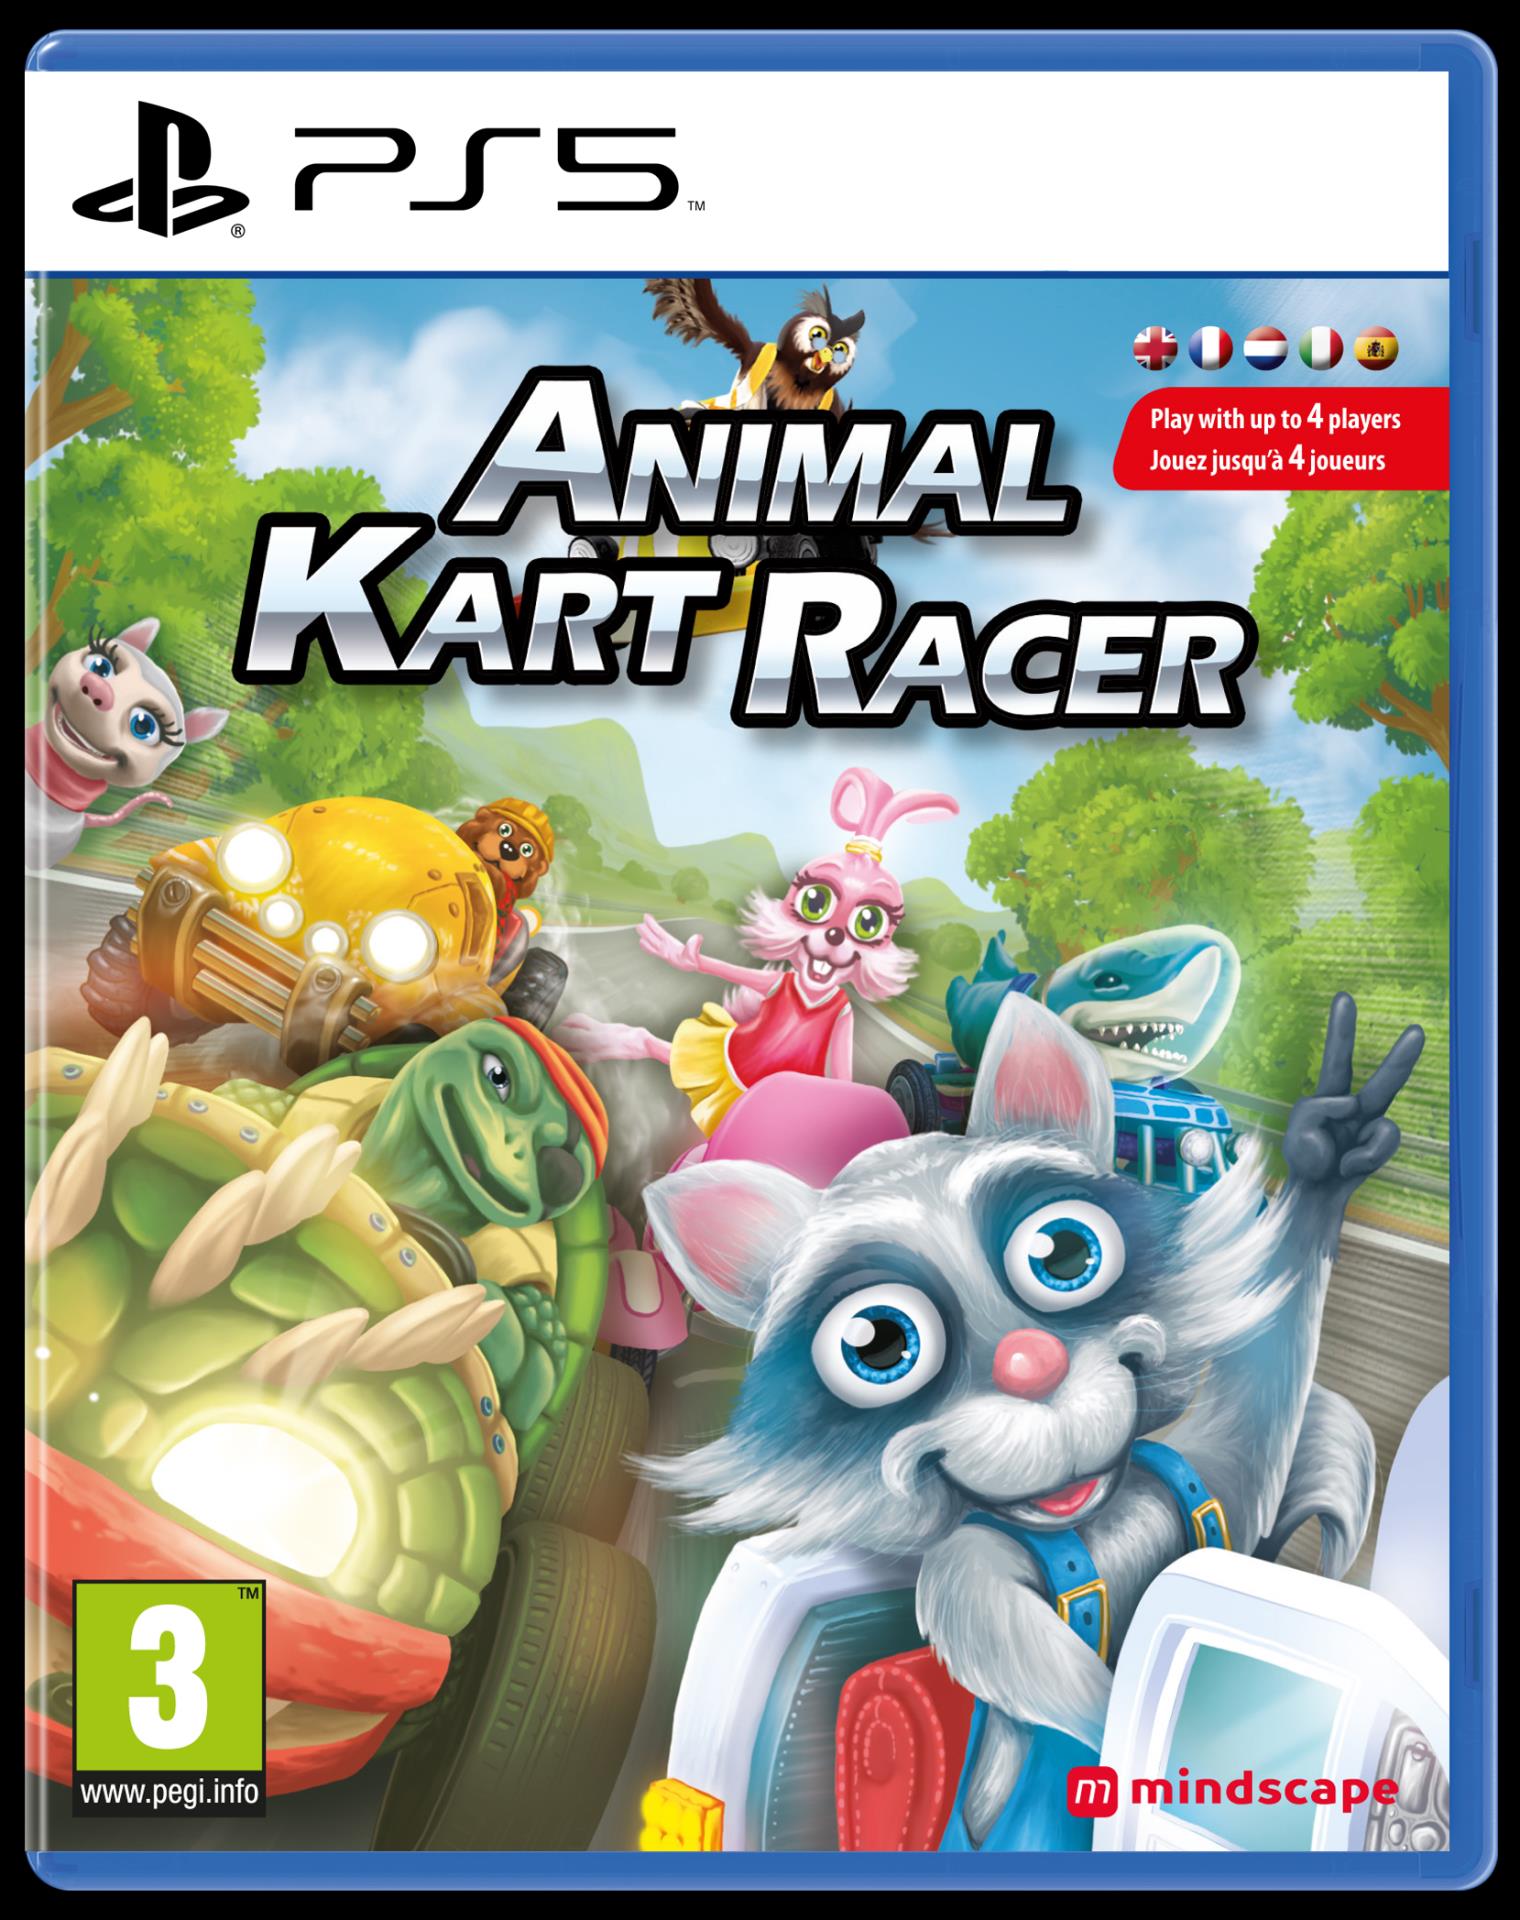 Animal Kart Racer